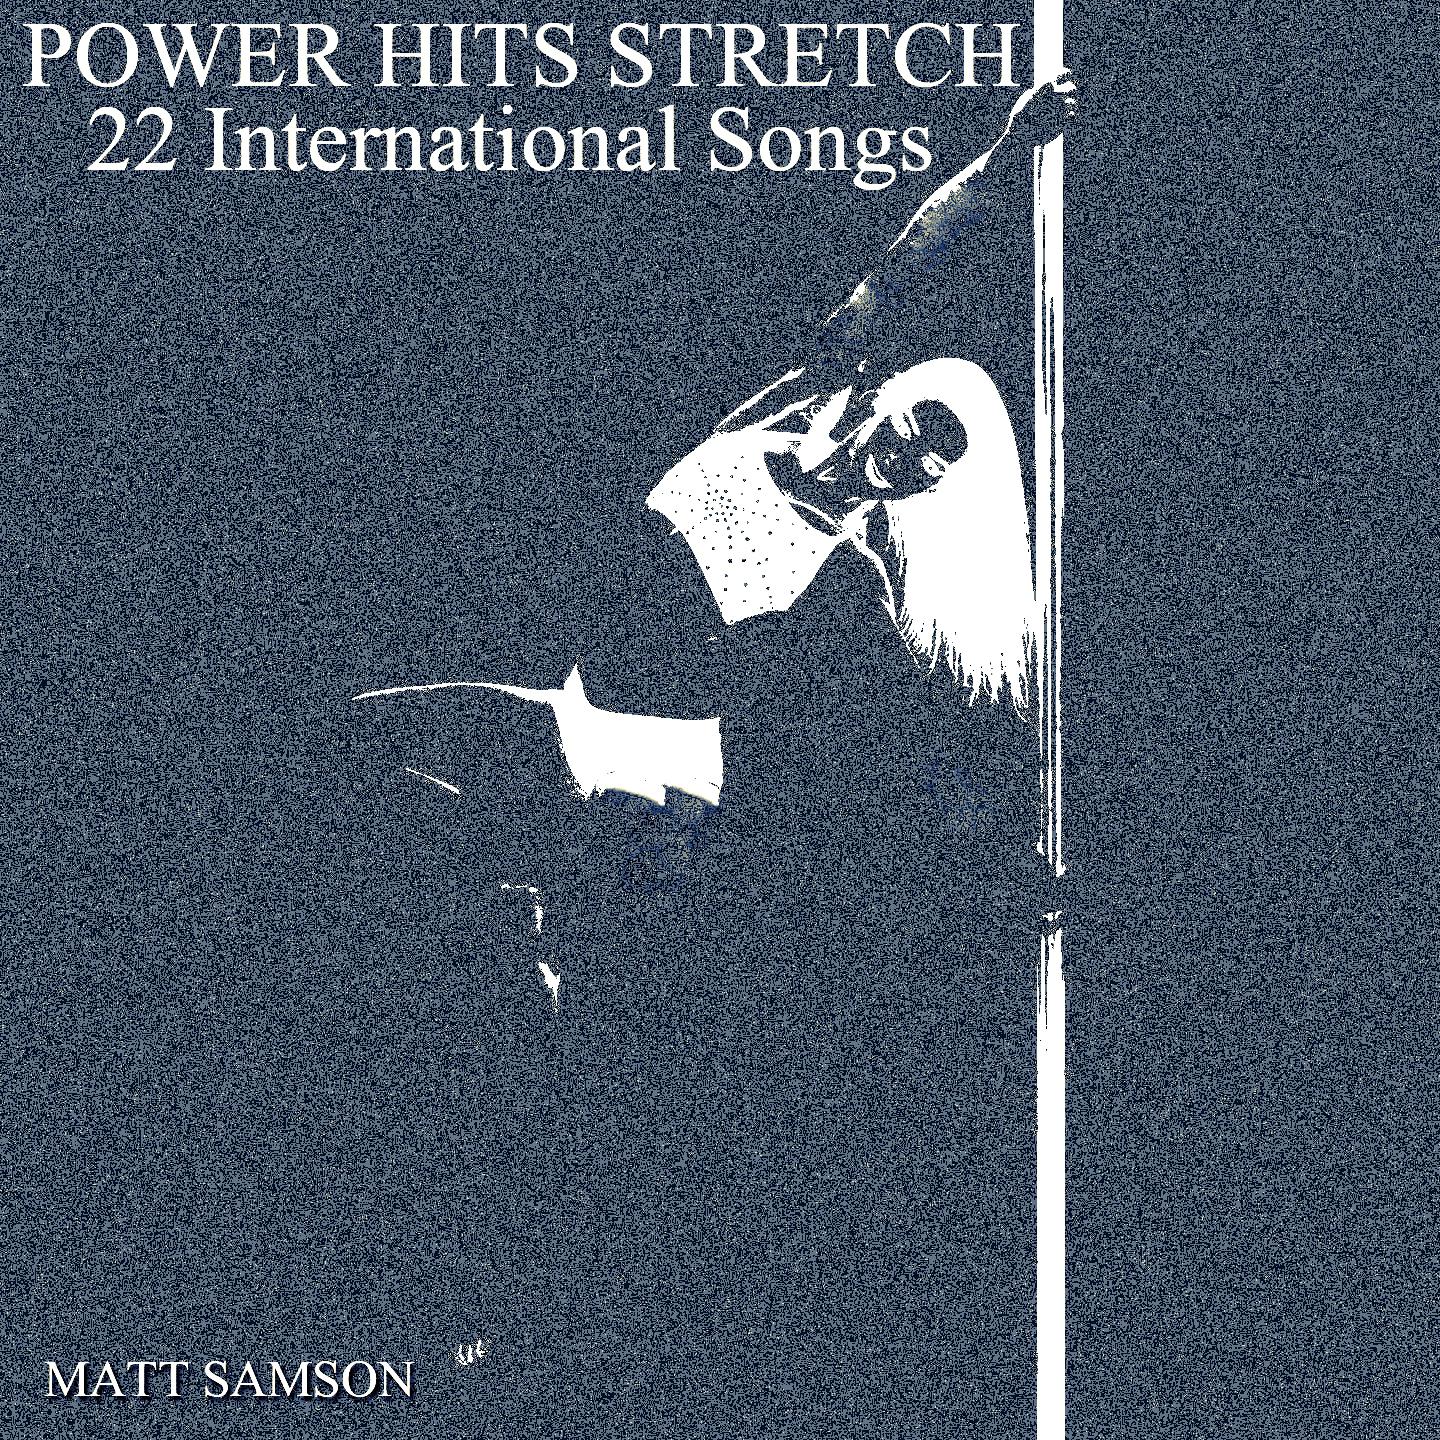 Matt Samson - Runnin' (Lose It All) (Originally Performed By Naughty Boy Feat Beyoncé & Arrow Benjamin)